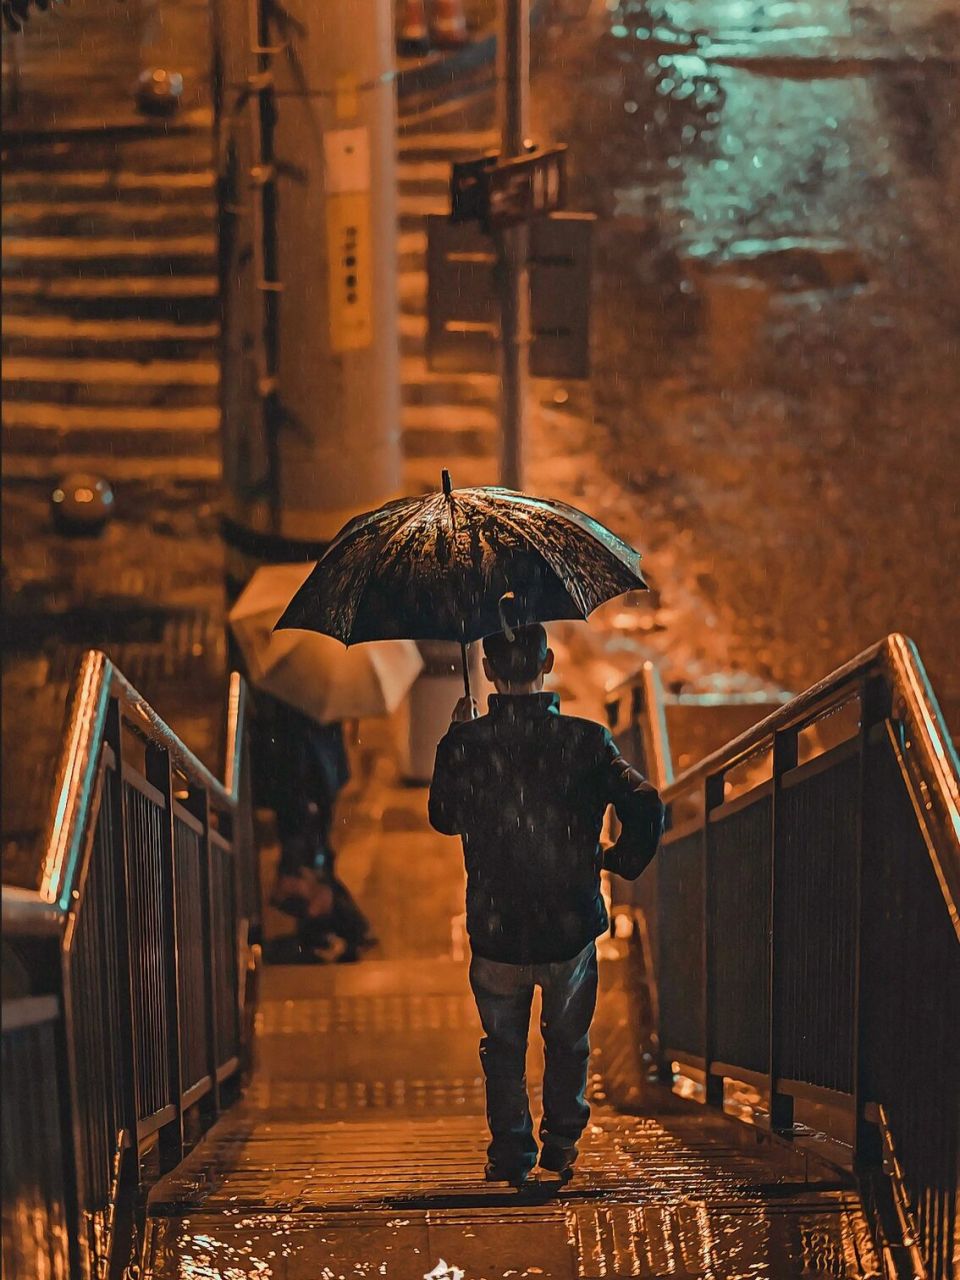 雨天的夜景街拍 世界大雨滂沱 万物苟且而活 无人为你背负更多  a9 85